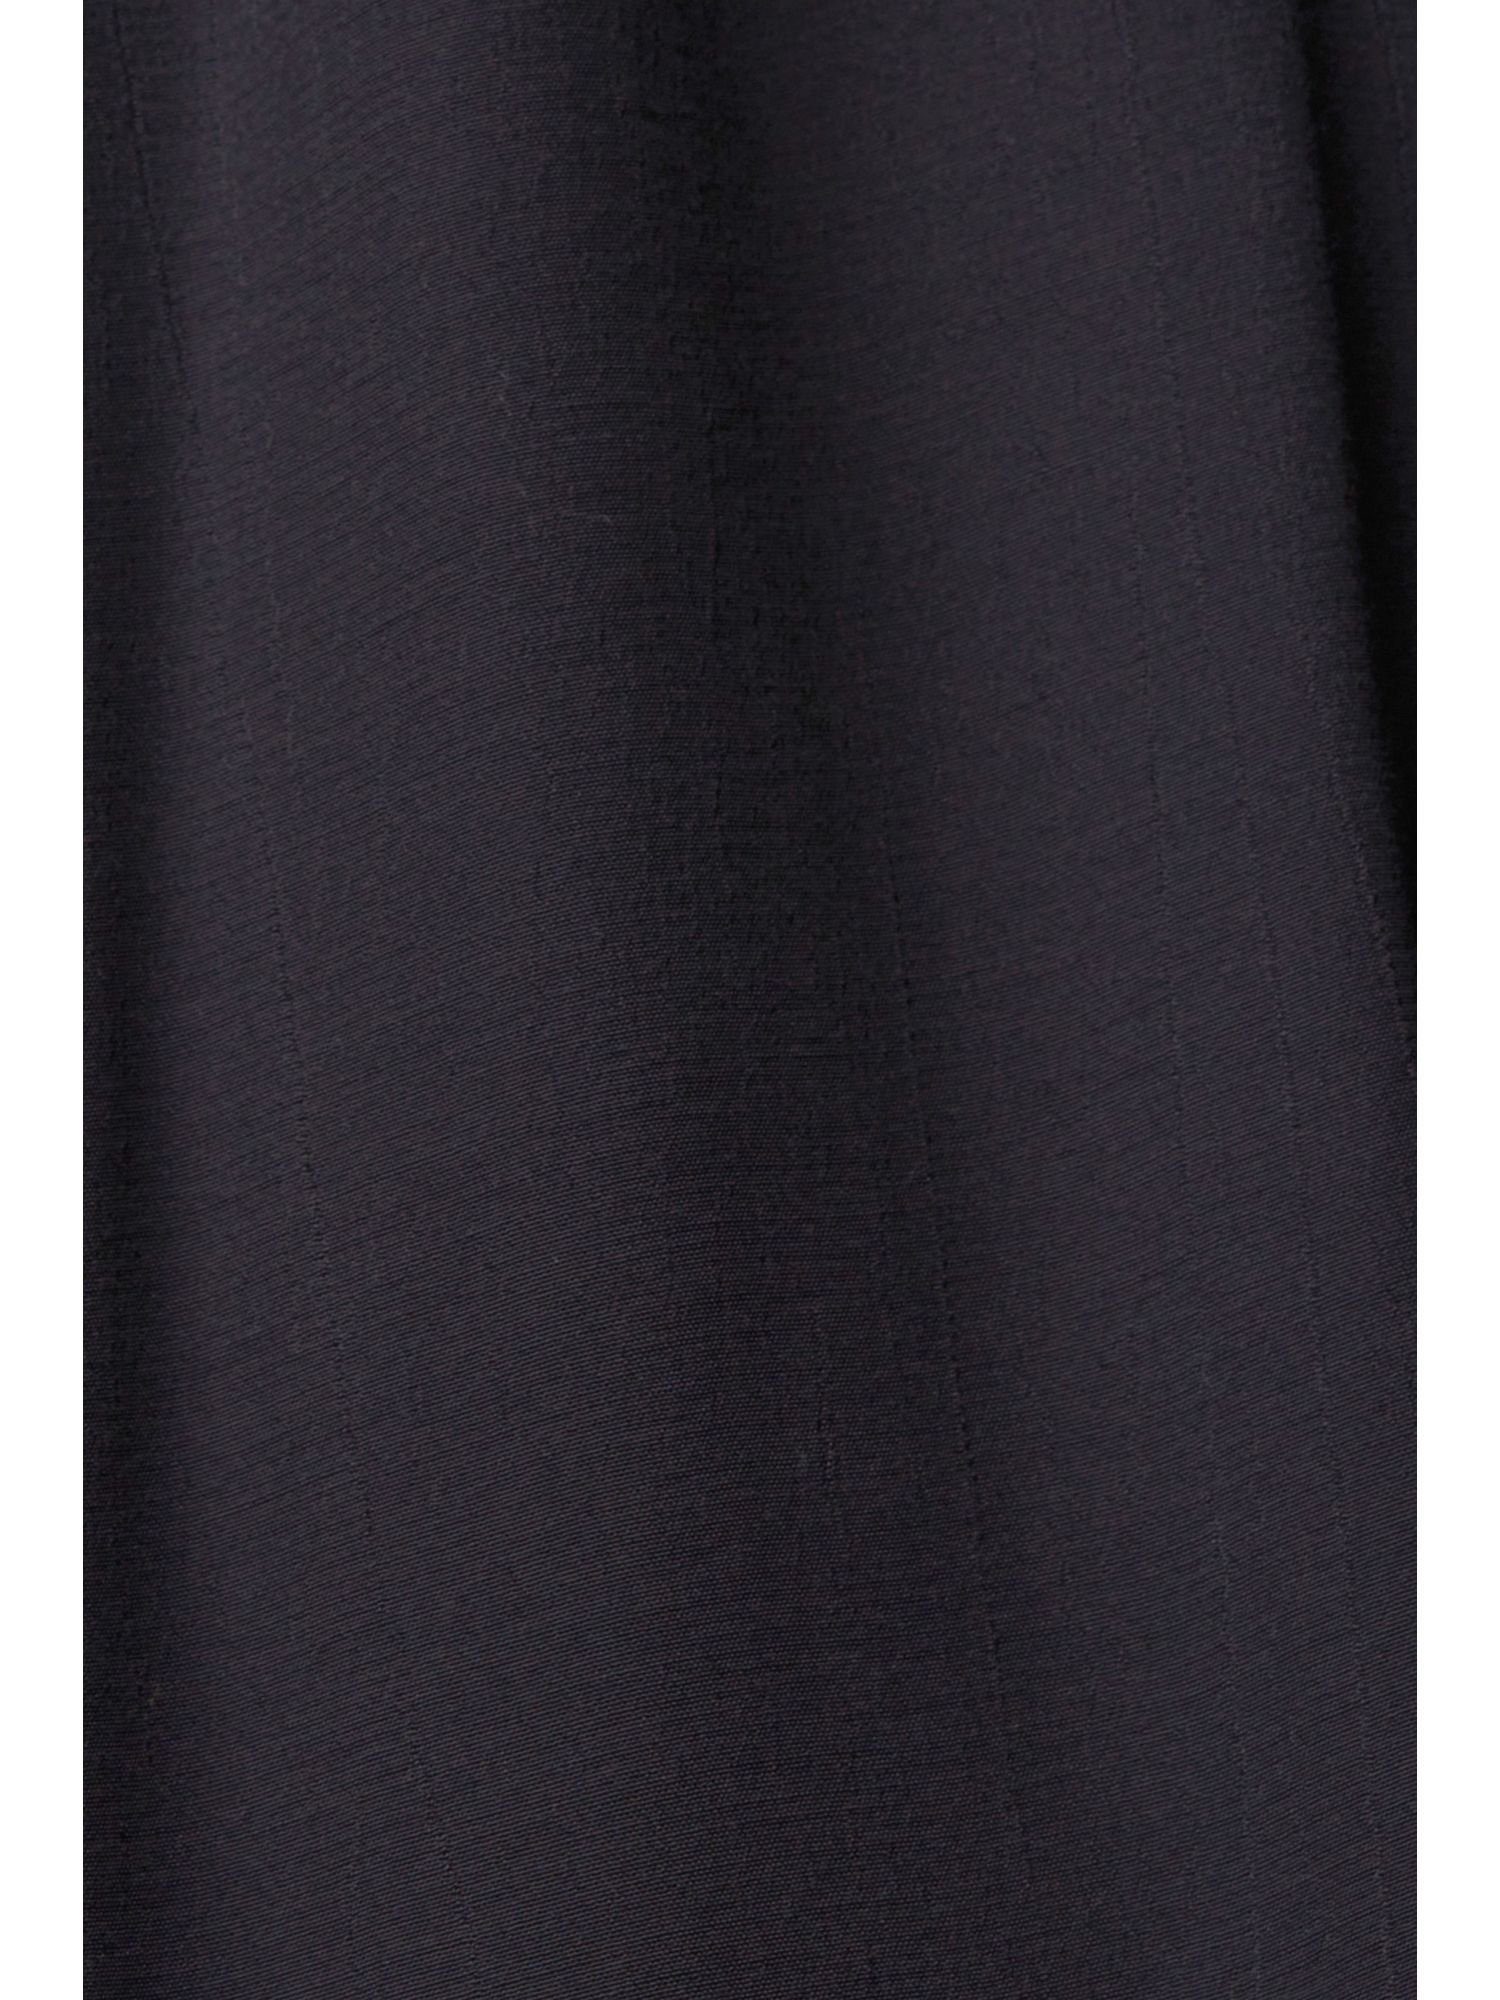 by Kleid Esprit mit edc Minikleid BLACK Spitzendetails